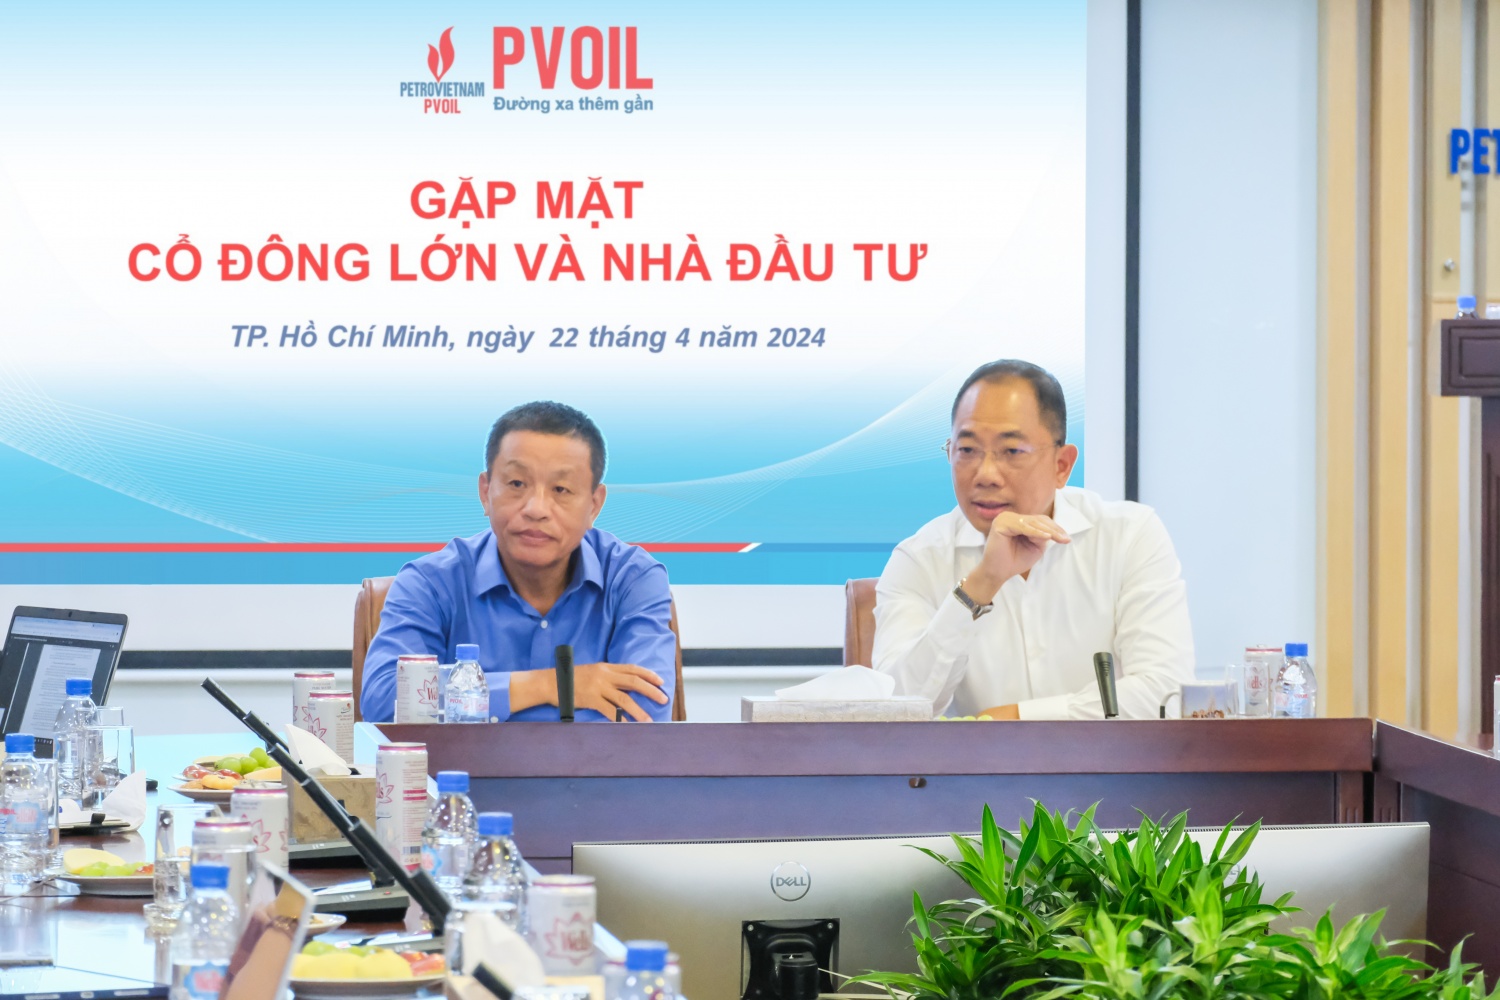 Ông Cao Hoài Dương – Chủ tịch HĐQT (bên phải) và ông Đoàn Văn Nhuộm – Tổng Giám đốc PVOIL (bên trái) giải đáp các nội dung cổ đông, nhà đầu tư quan tâm